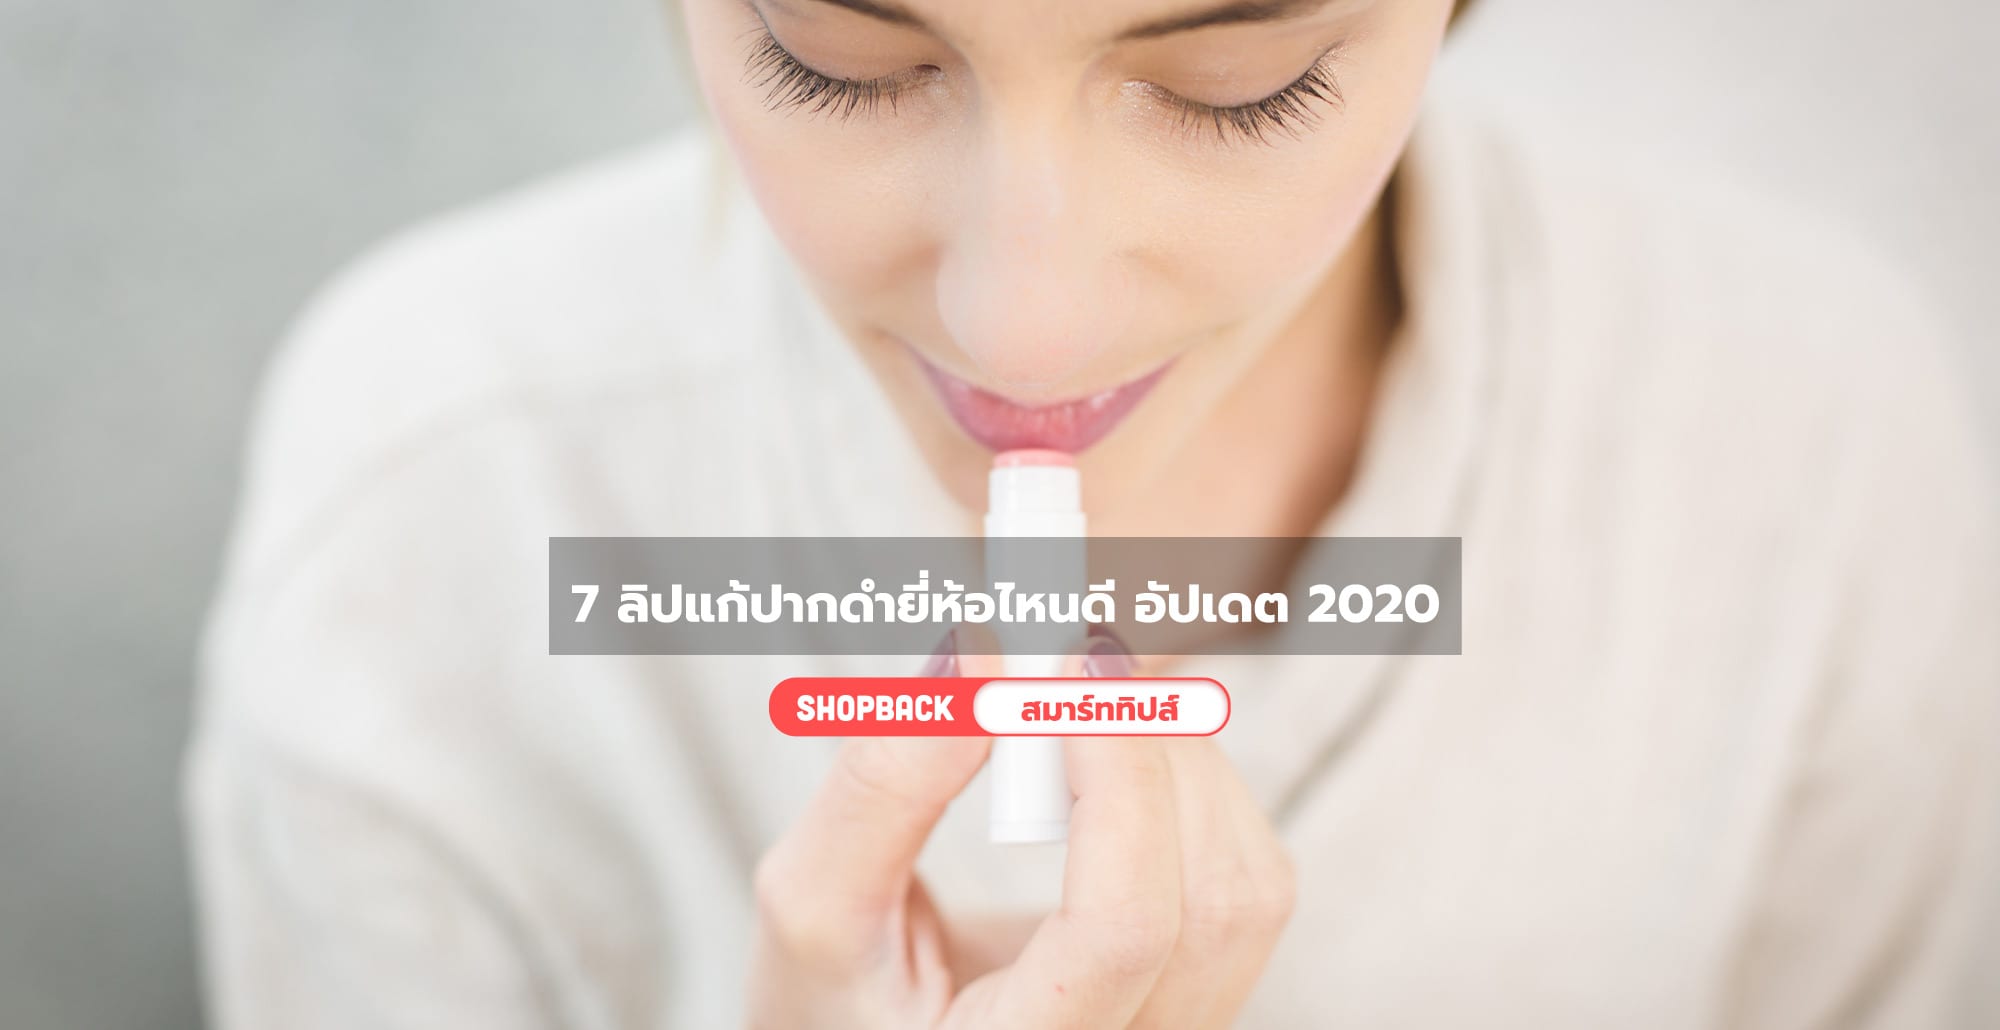 7 ลิปแก้ปากดำยี่ห้อไหนดี เรียวปากนุ่มชุ่มชื้นดูสุขภาพดี อัปเดตปี 2020